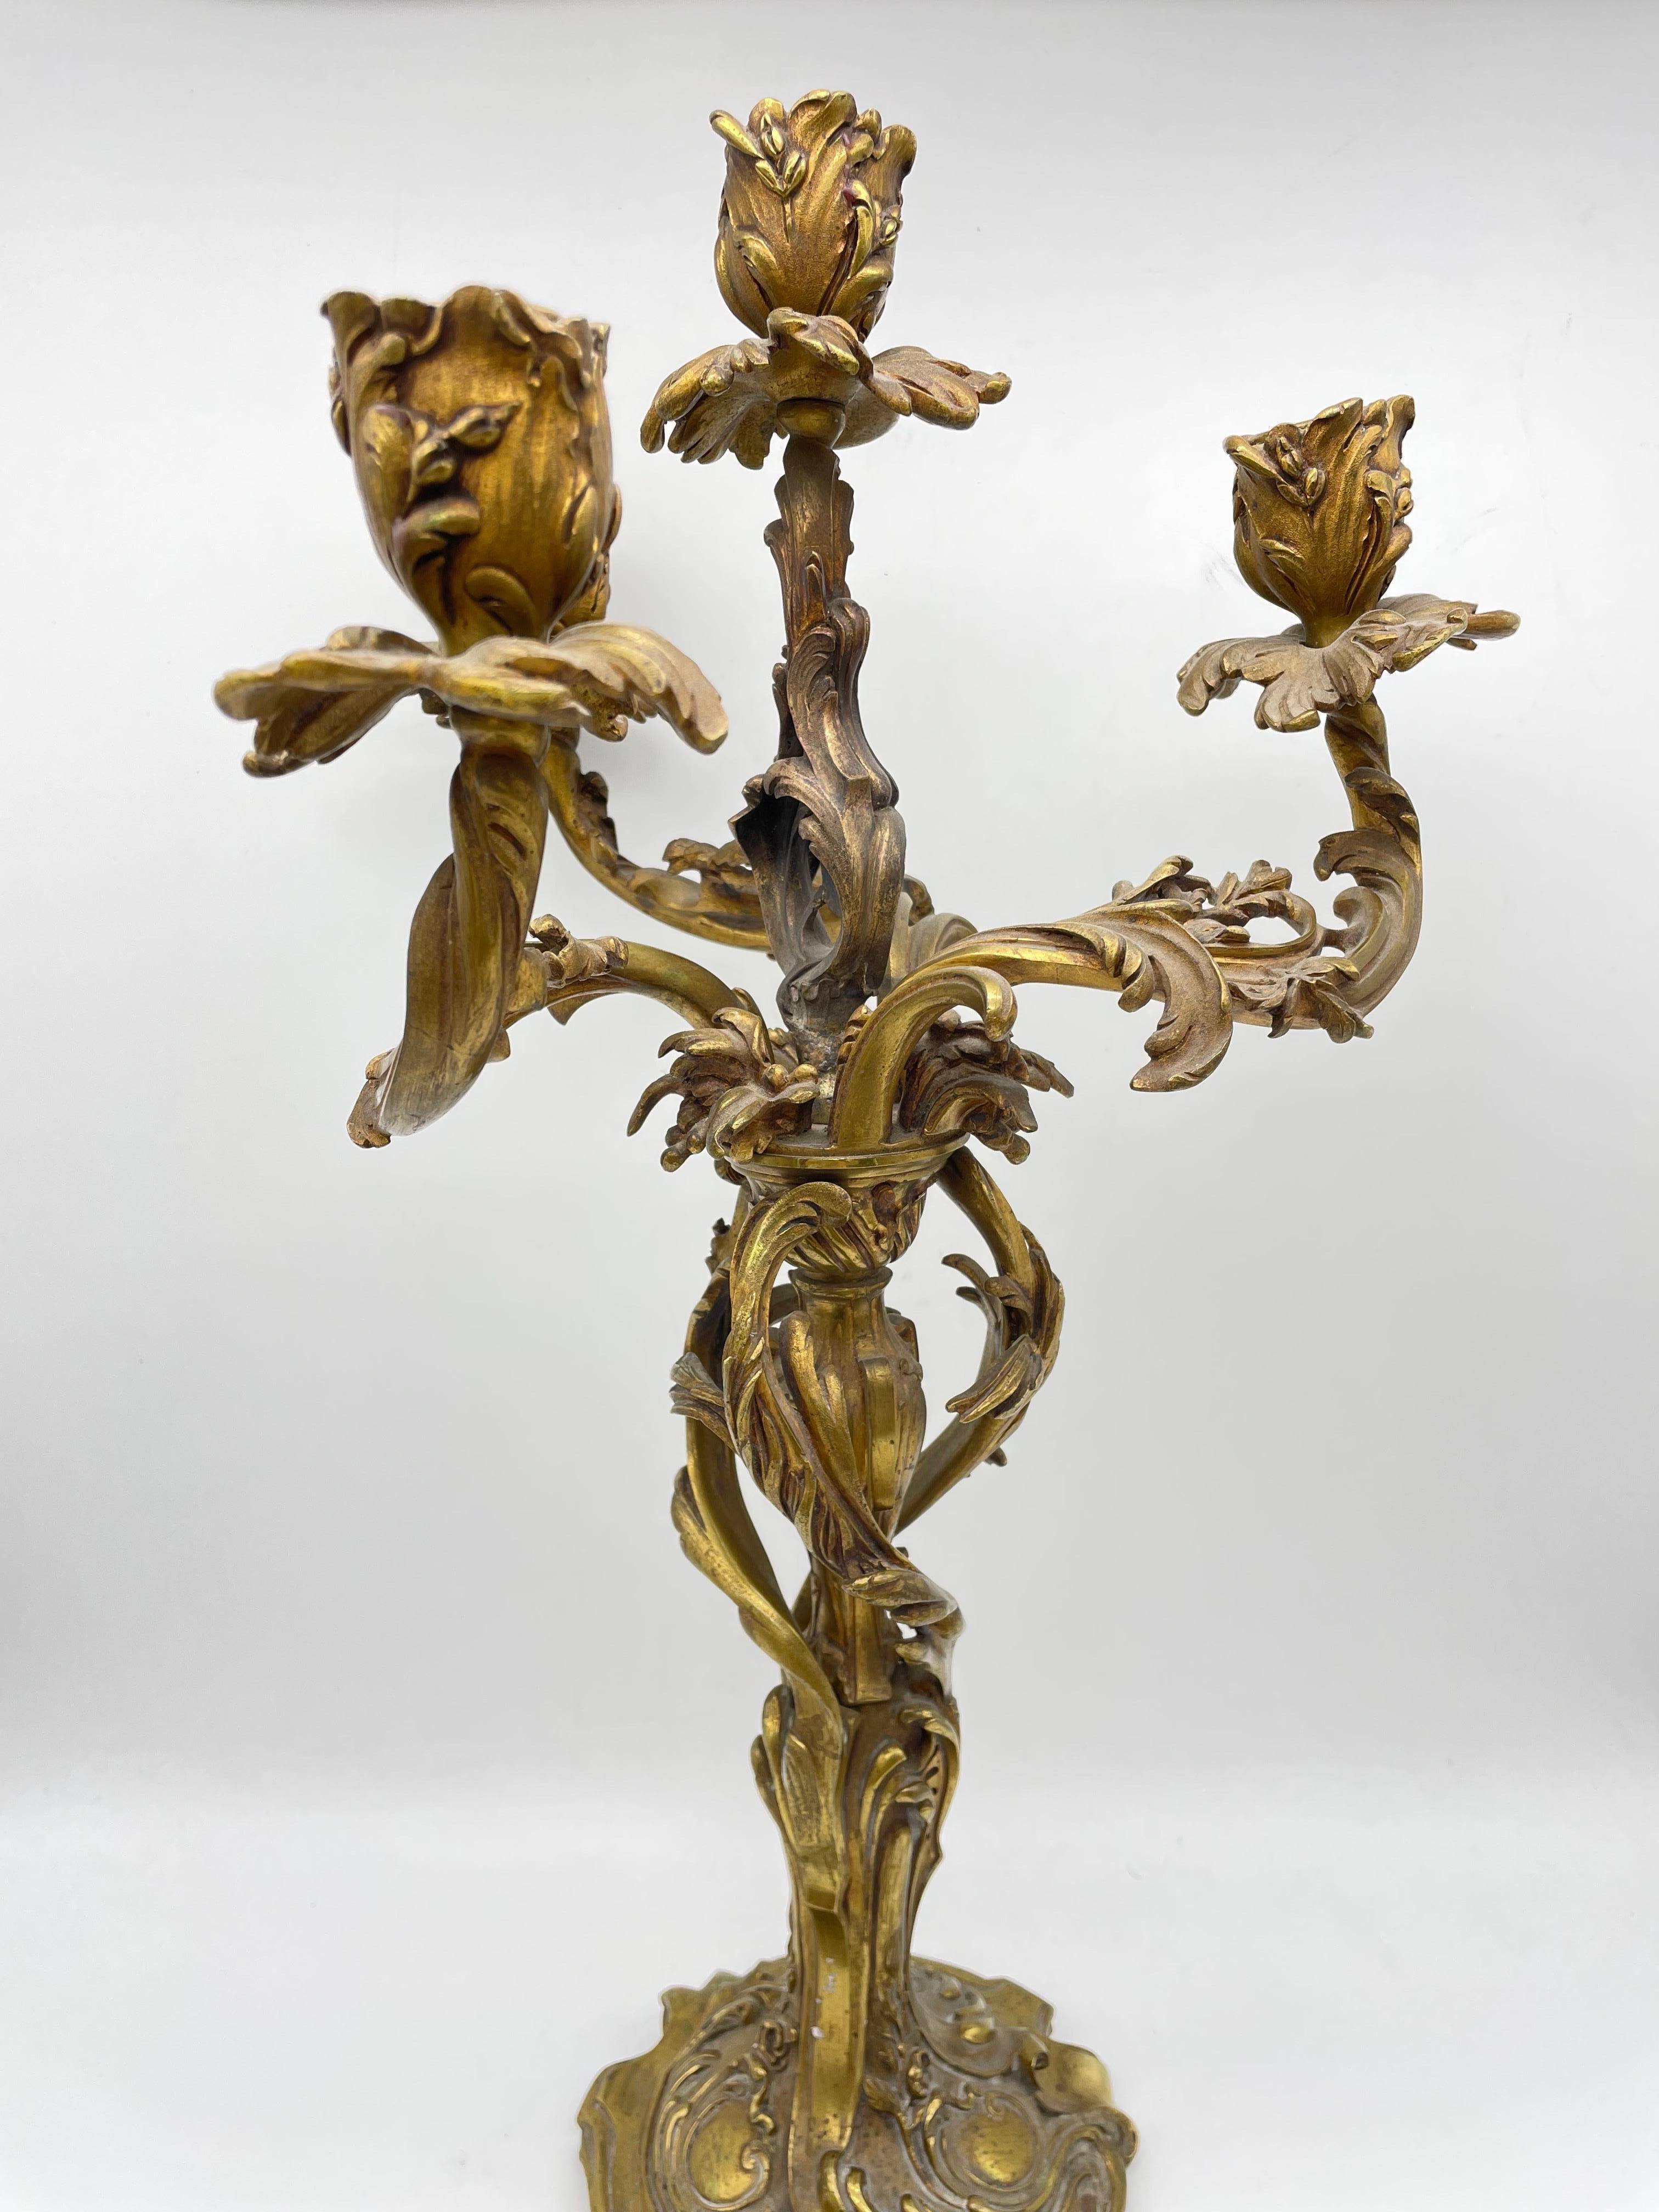 Antiker Rokoko-Kerzenhalter aus Bronze um 1880

Massiv gearbeiteter Kerzenständer mit 4 Kerzenhaltern. Stark verziertes und detailliertes Werk.

Rokoko um 1880